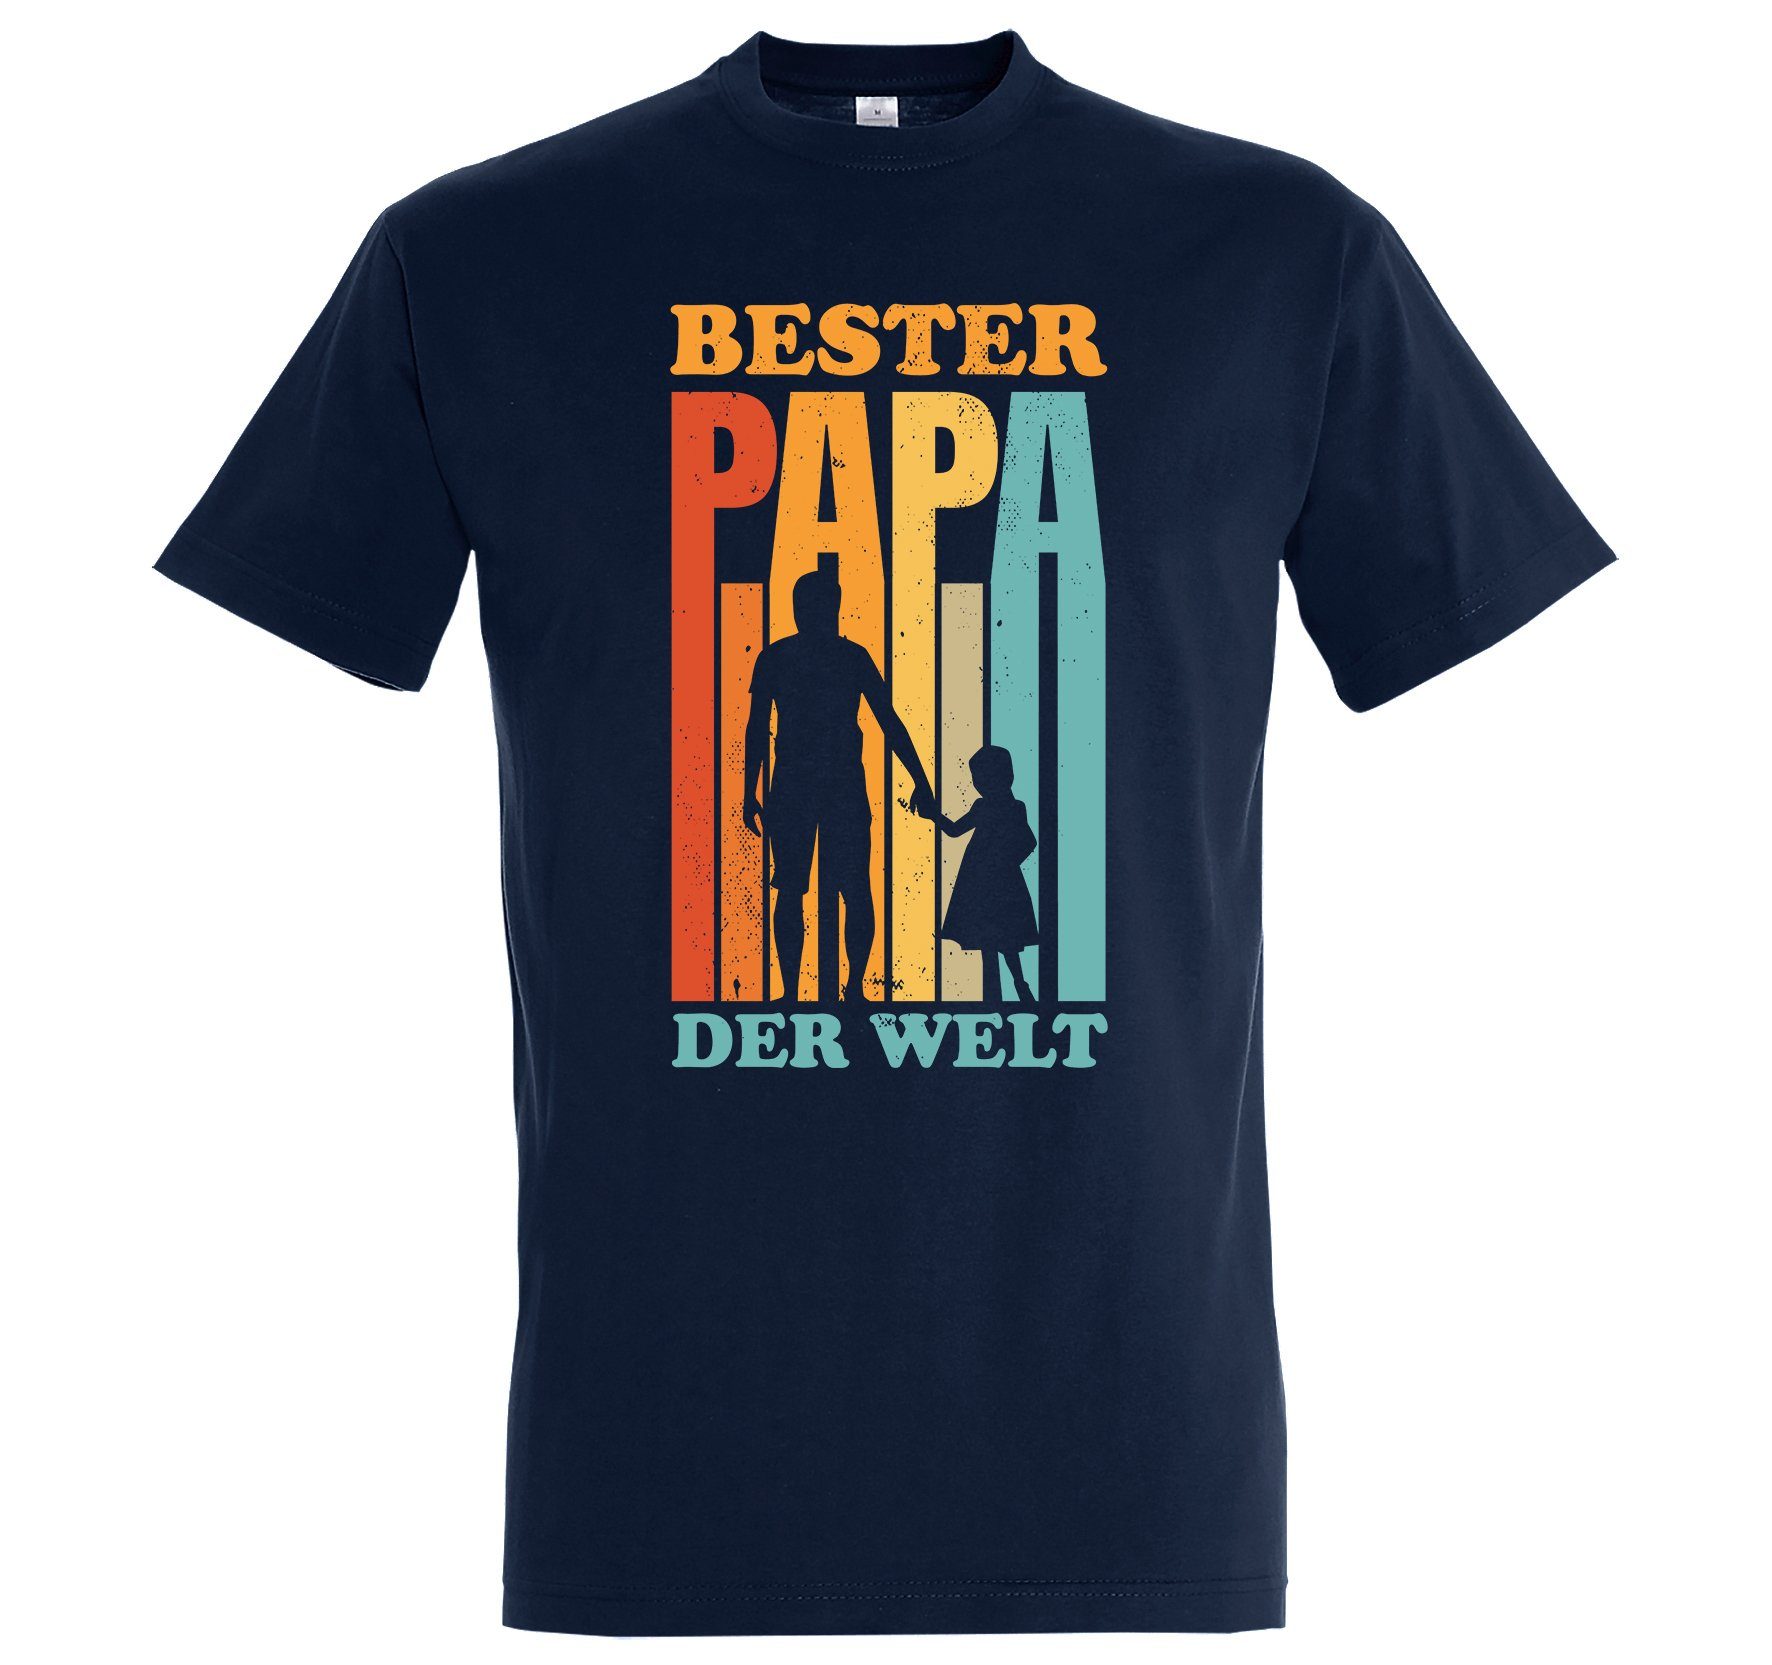 Print mit der T-Shirt "Bester Youth Navy T-Shirt Designz Papa Welt" Herren Spruch